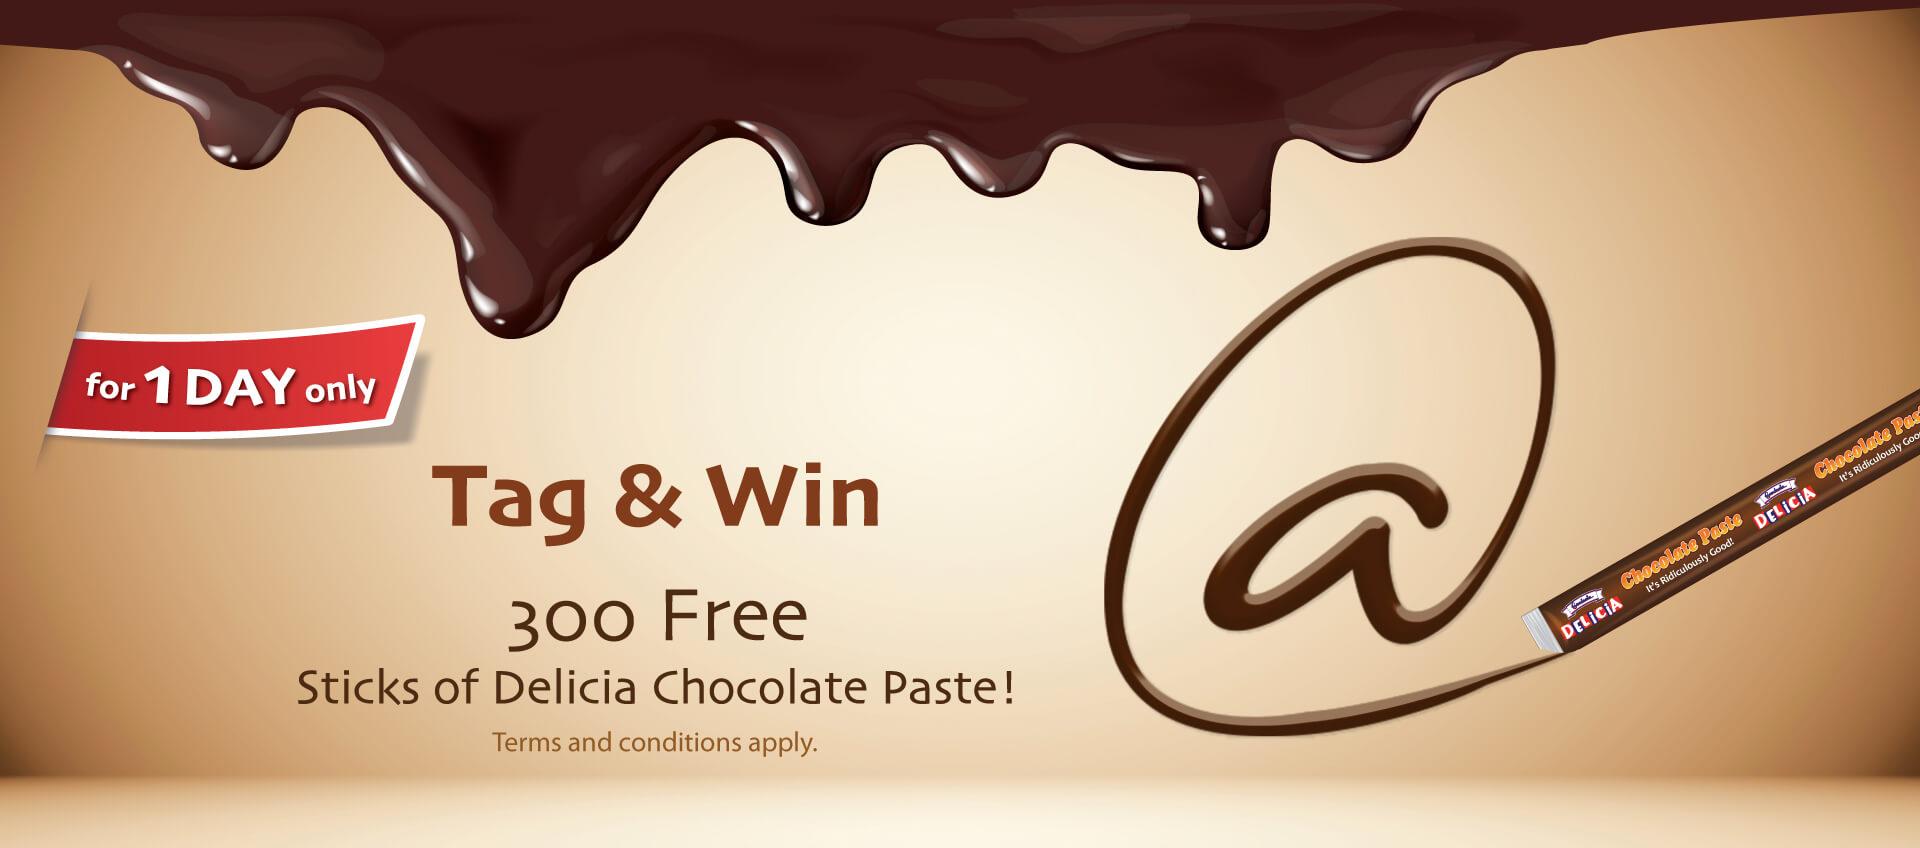 Gardenia Delicia Chocolate Paste – Tag & Win! Contest